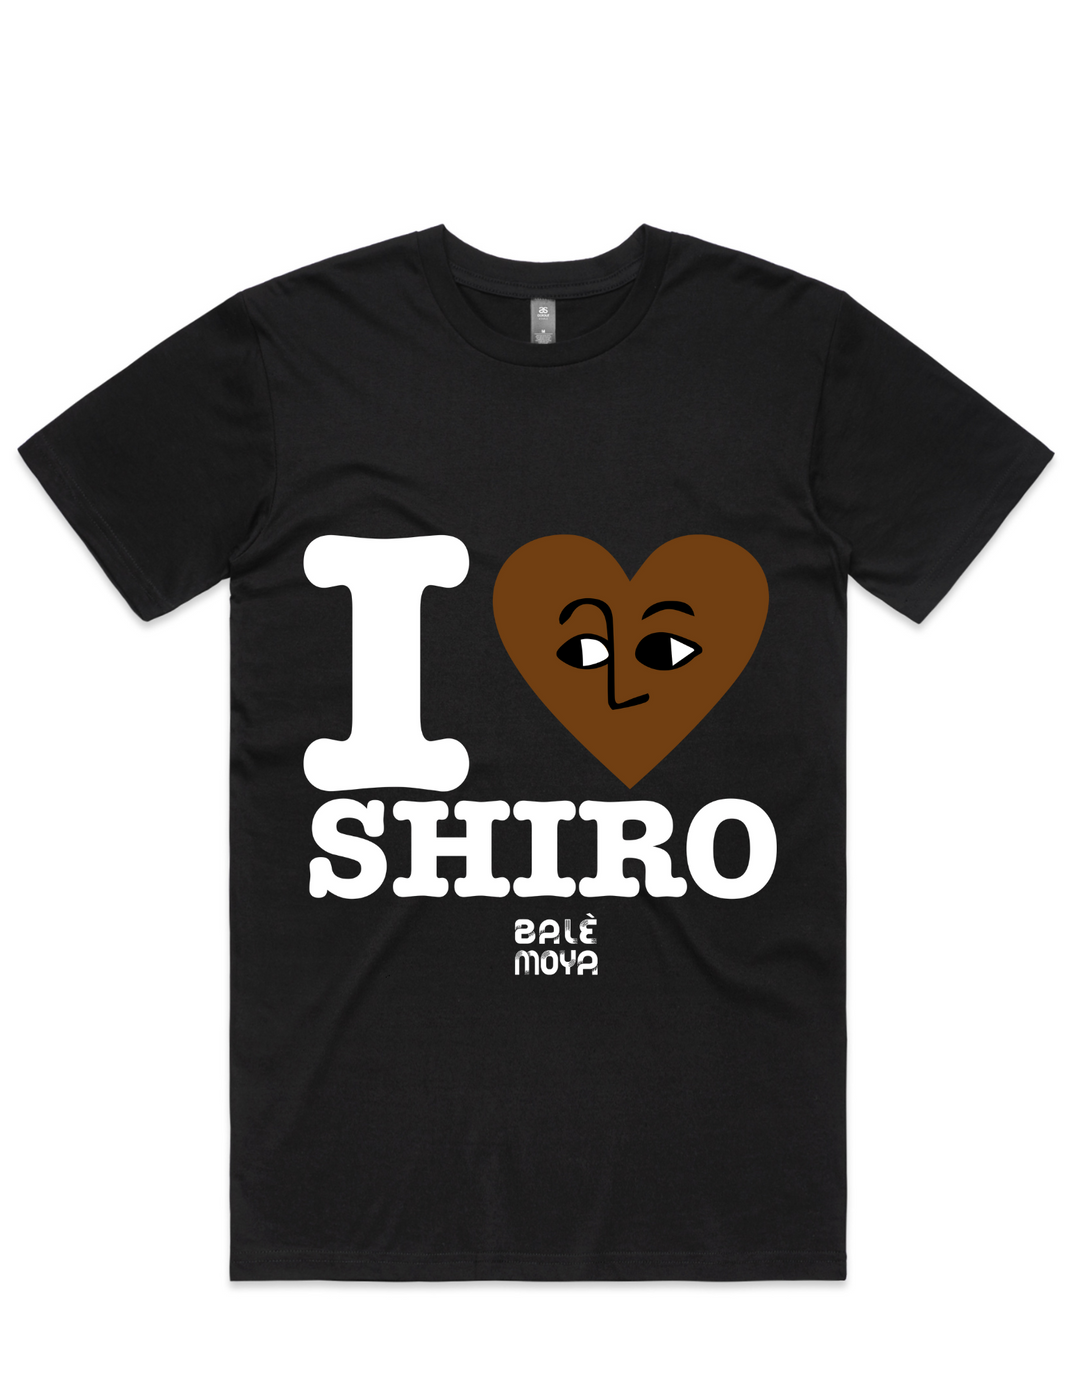 For Shiro Lovers Tee